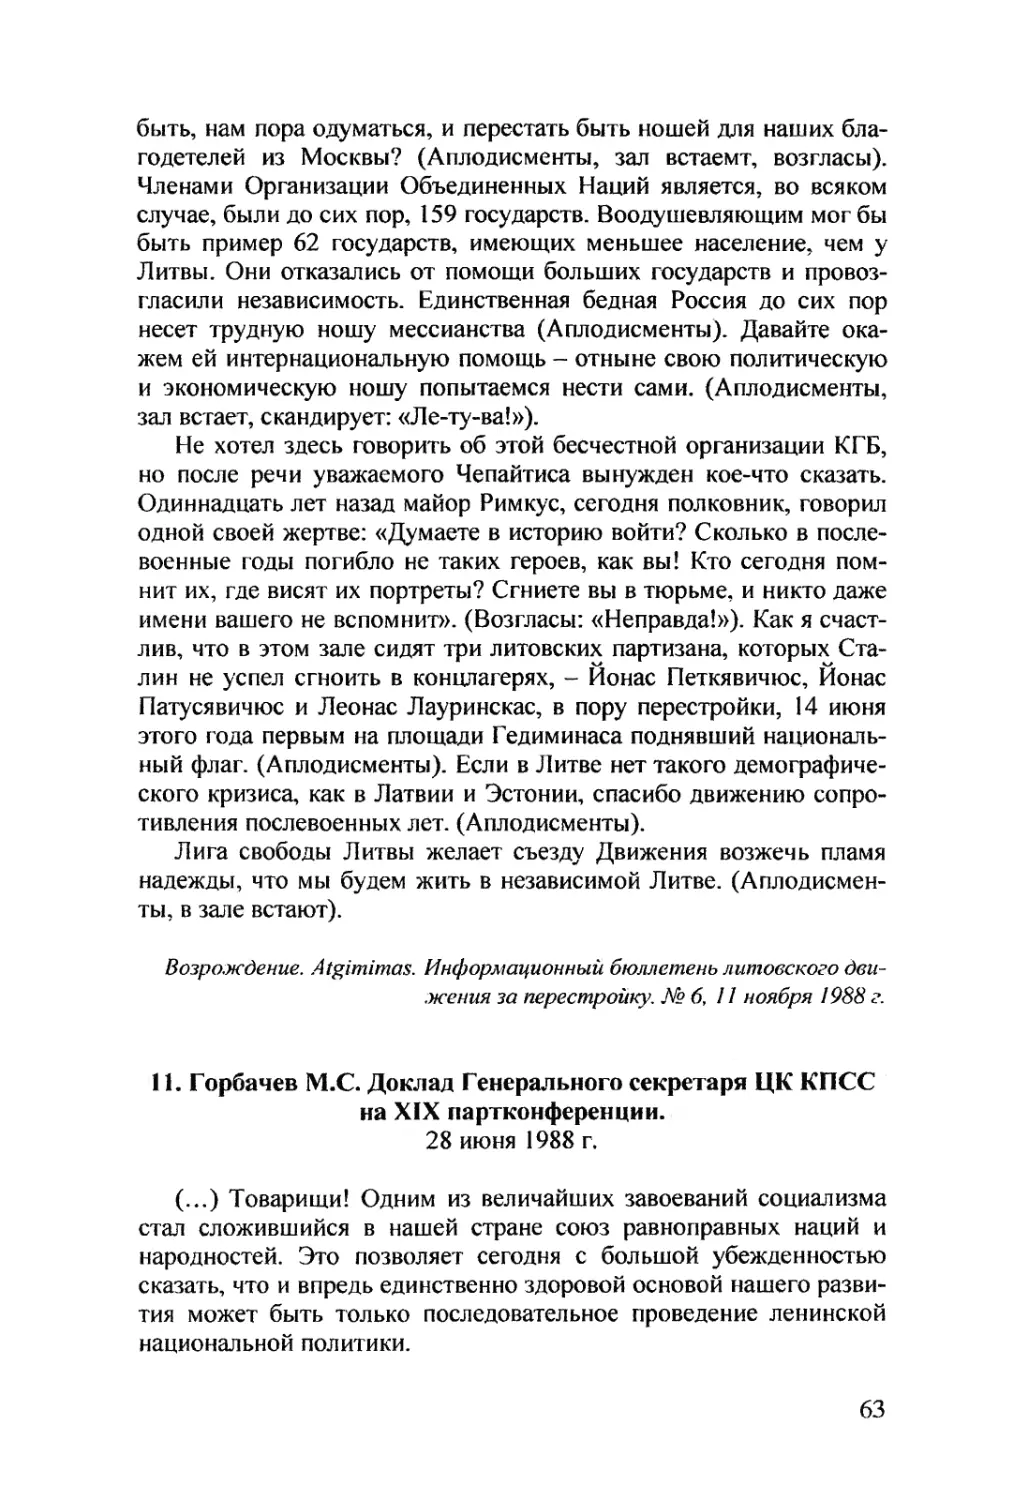 11. Горбачев M.C. Доклад Генерального секретаря ЦК КПСС на XIX партконференции. 28 июня 1988 г